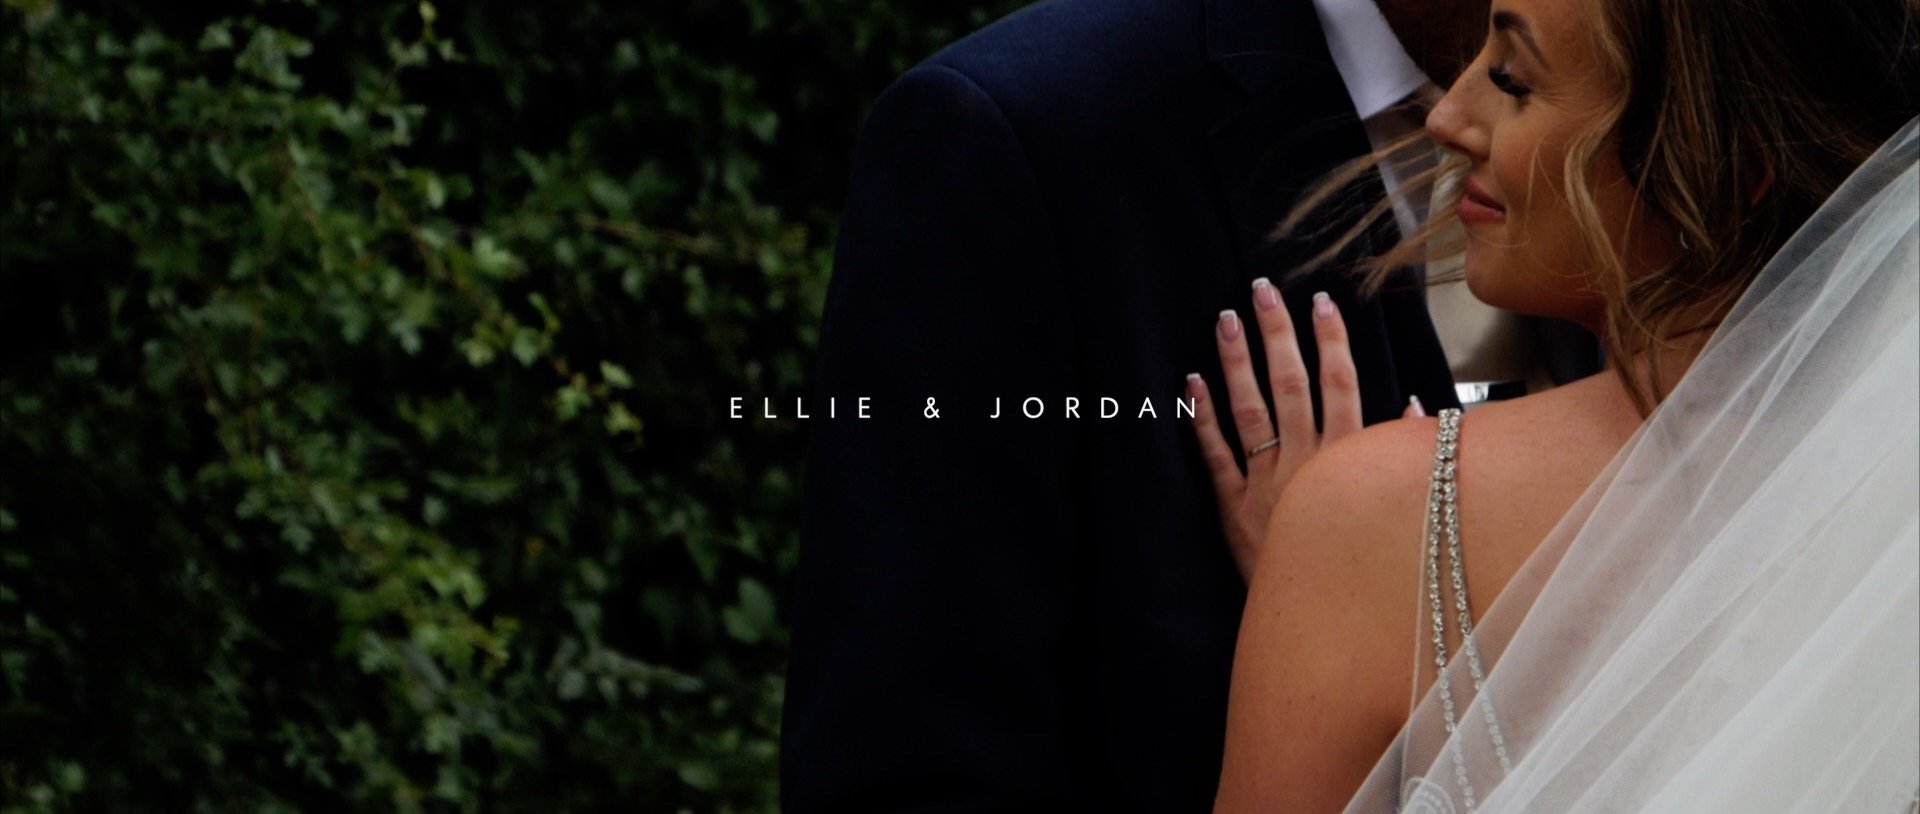 Ellie and Jordan cinematic wedding trailer - Apton Hall - 3 Cheers Media wedding videos.jpg